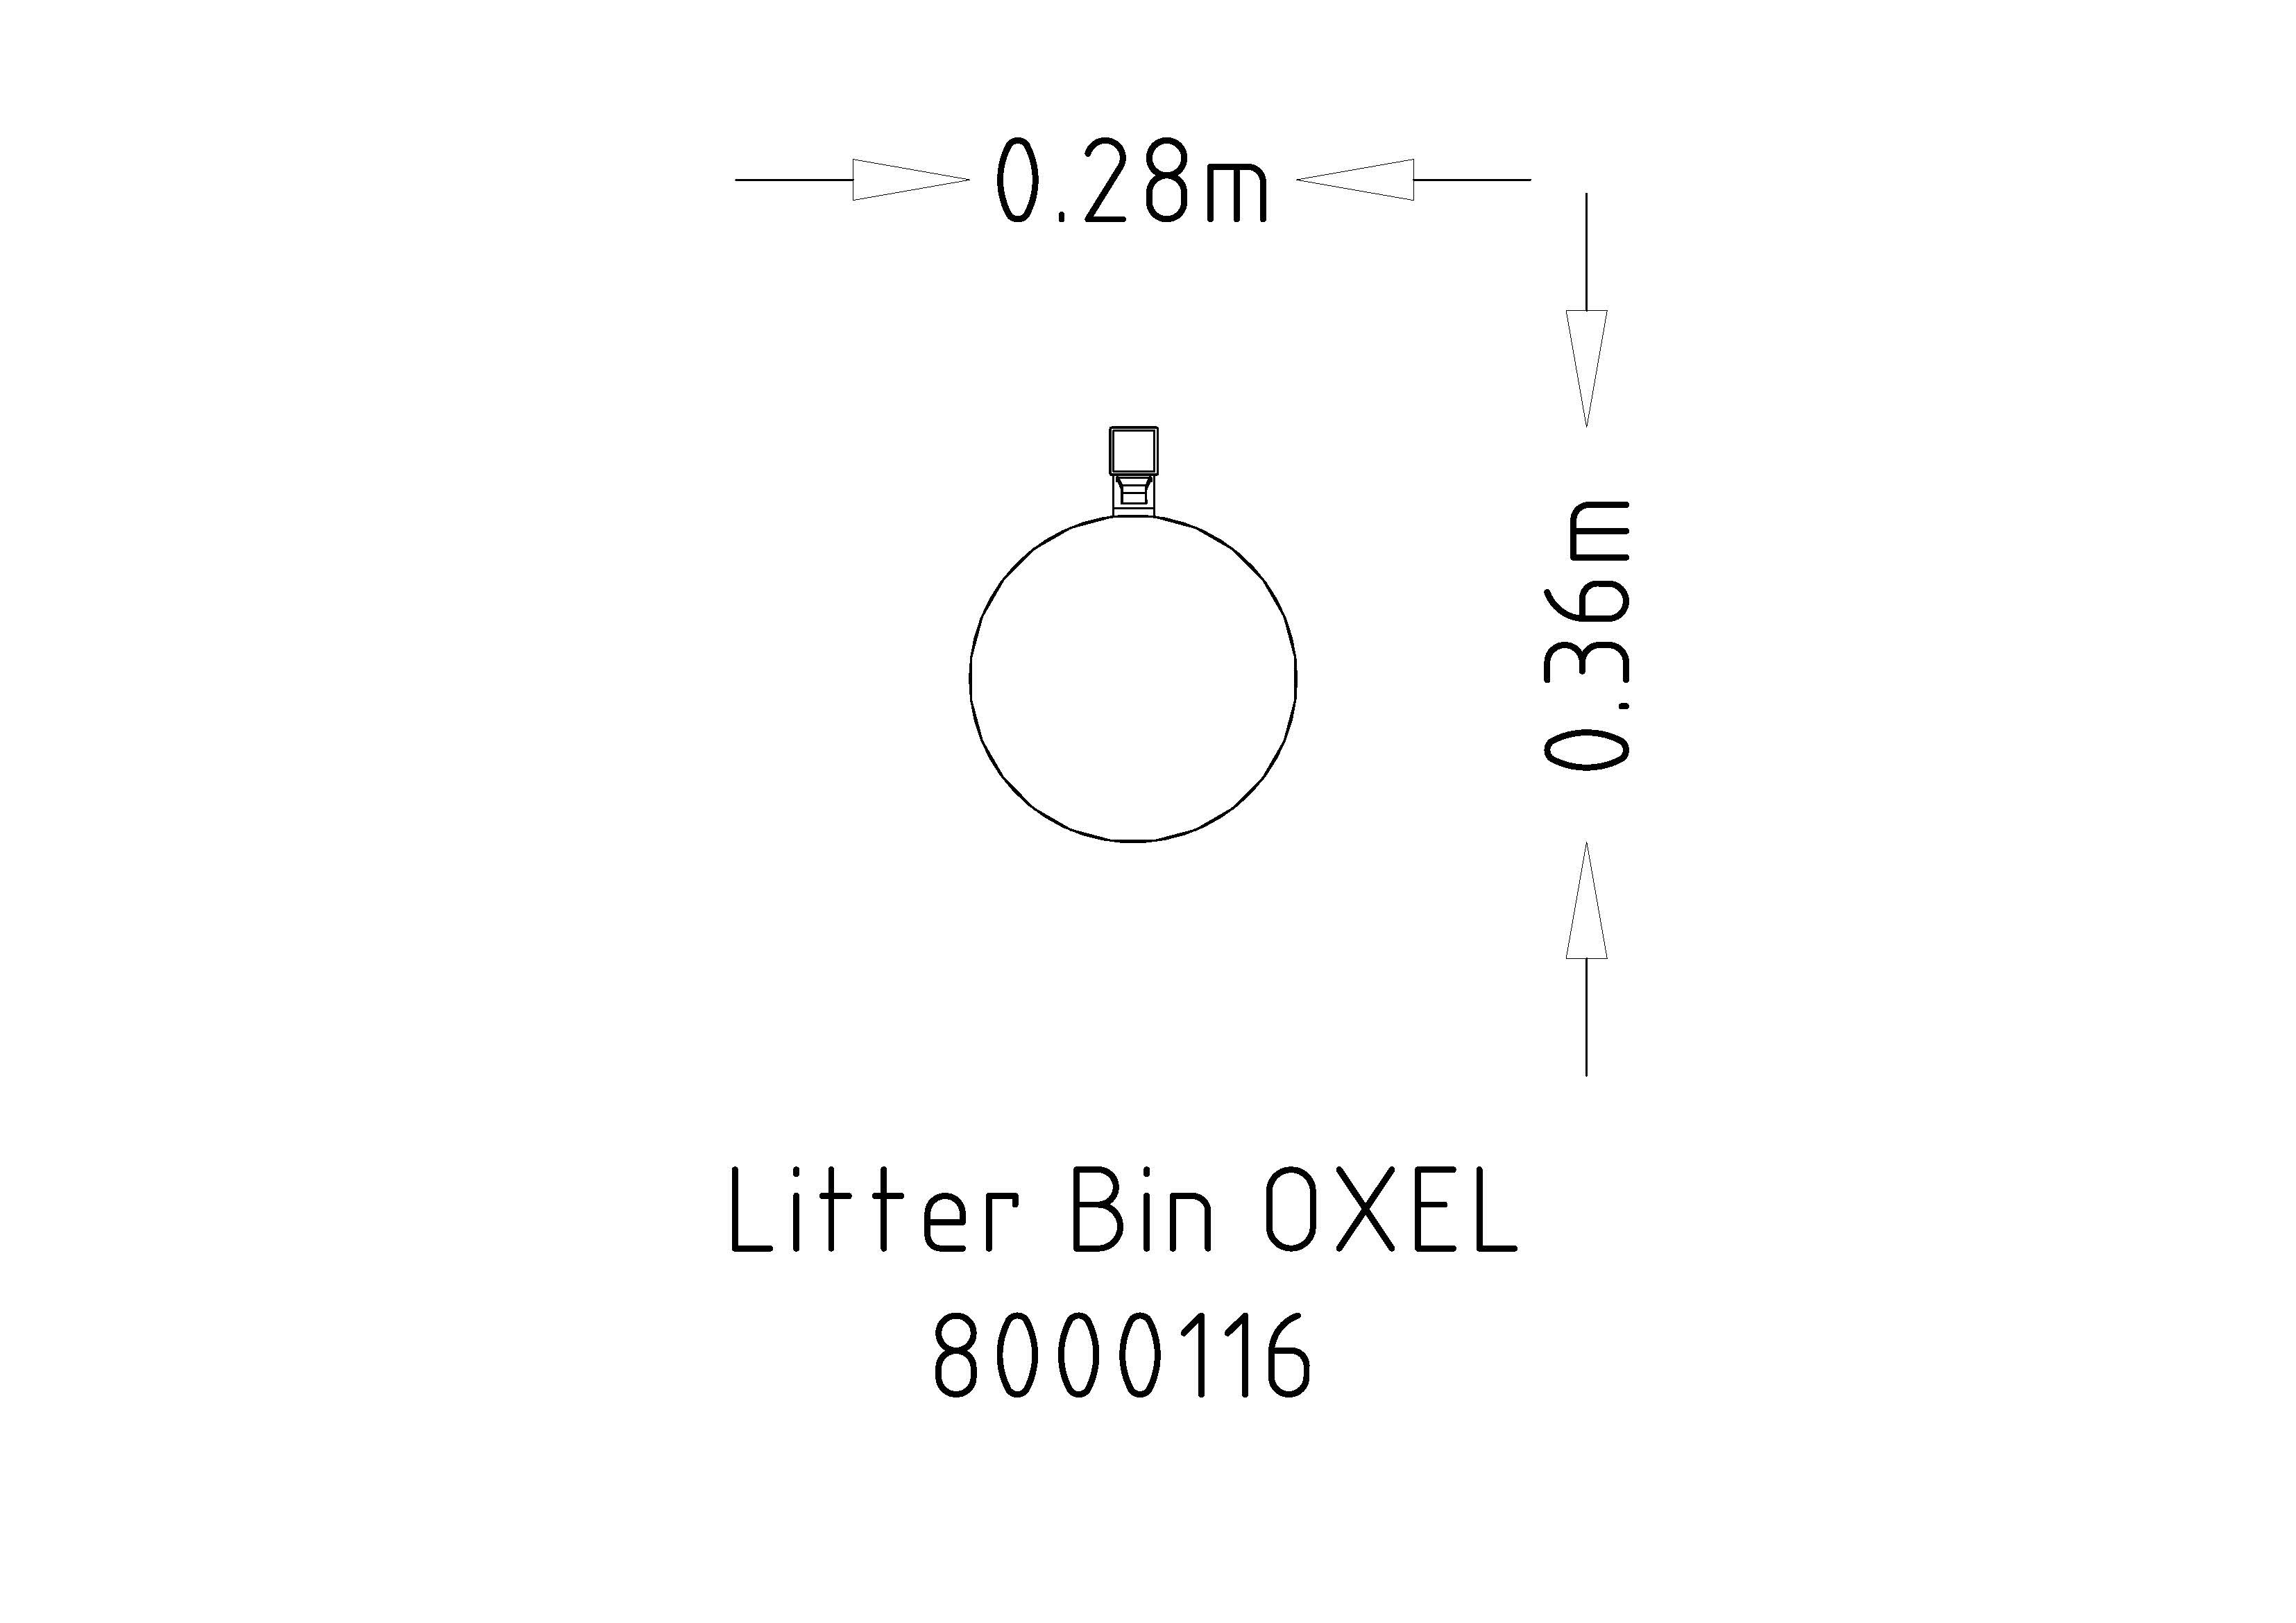 Litter Bin Oxel